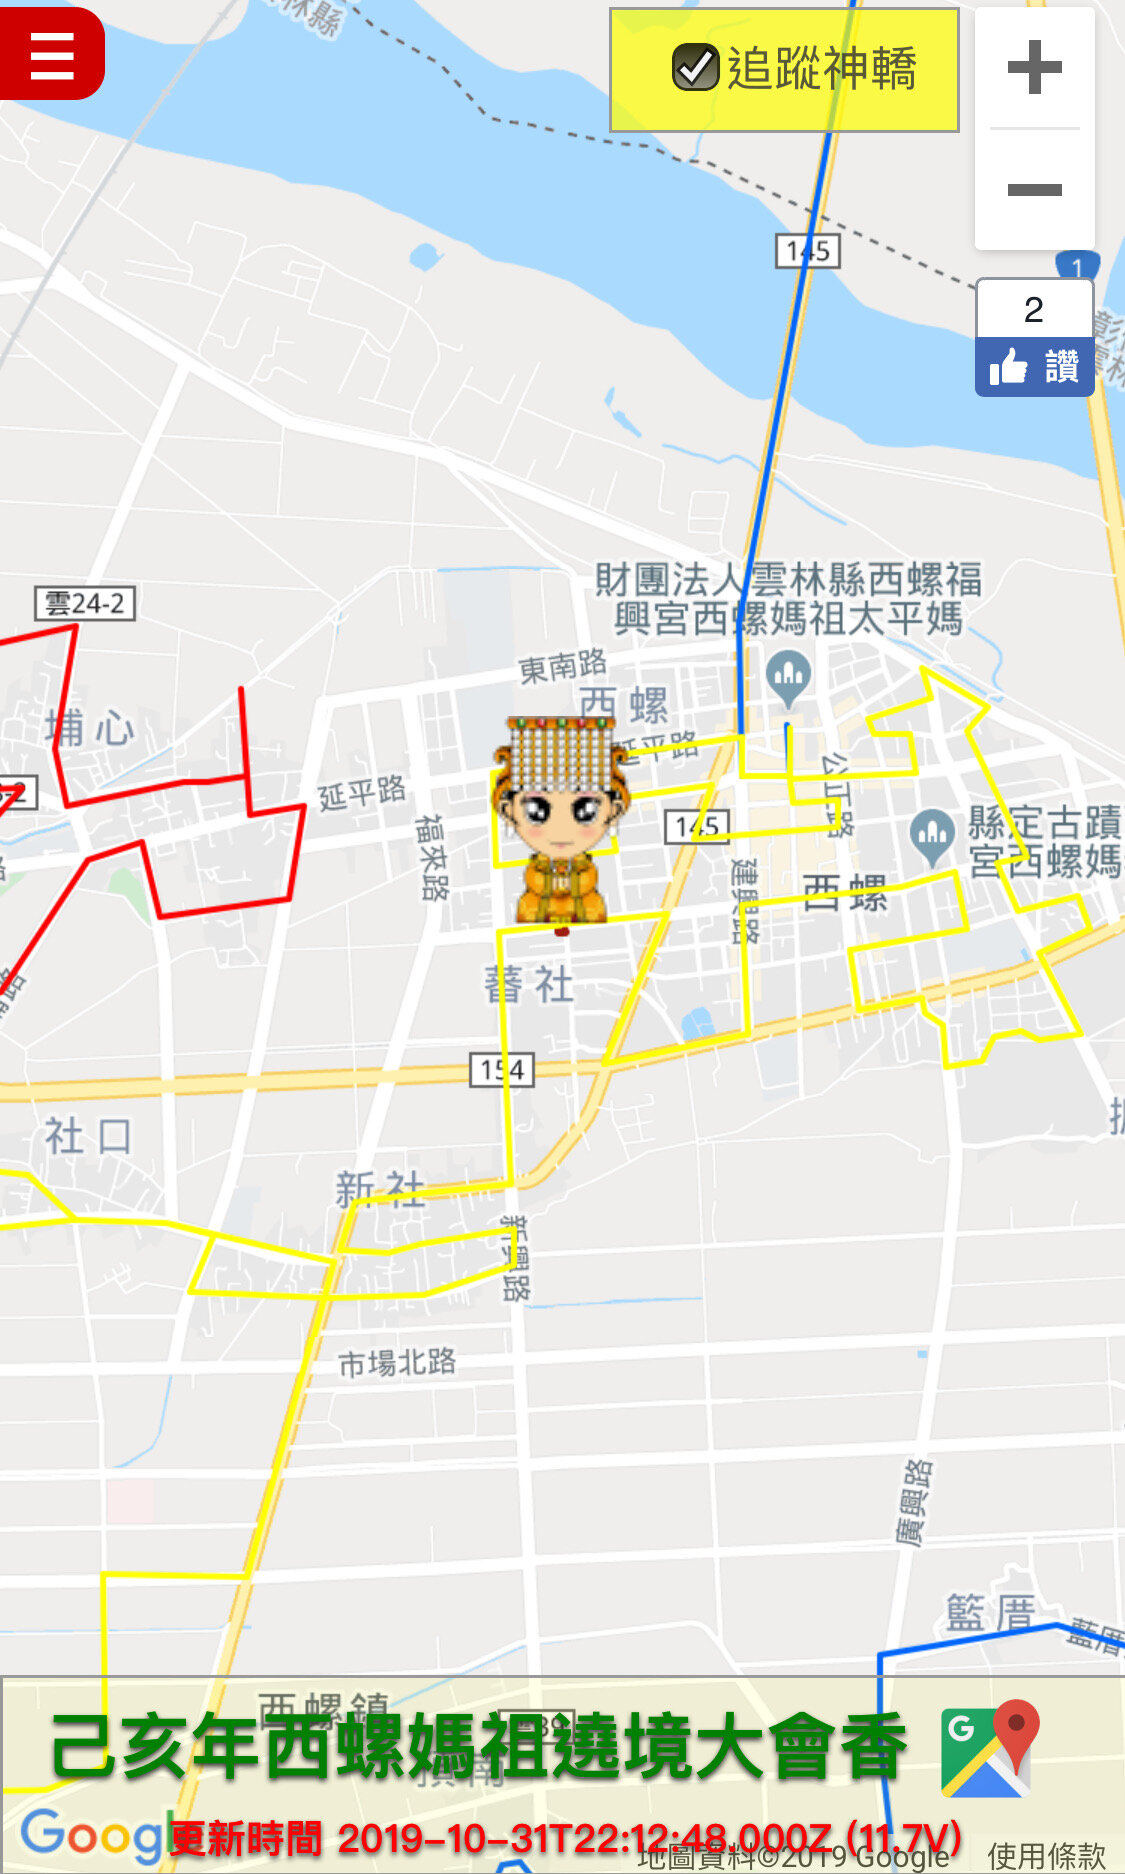 20191102西螺福興宮太平媽己亥年螺陽迎太平大會香神轎GPS即時定位系統服務 (4).JPG